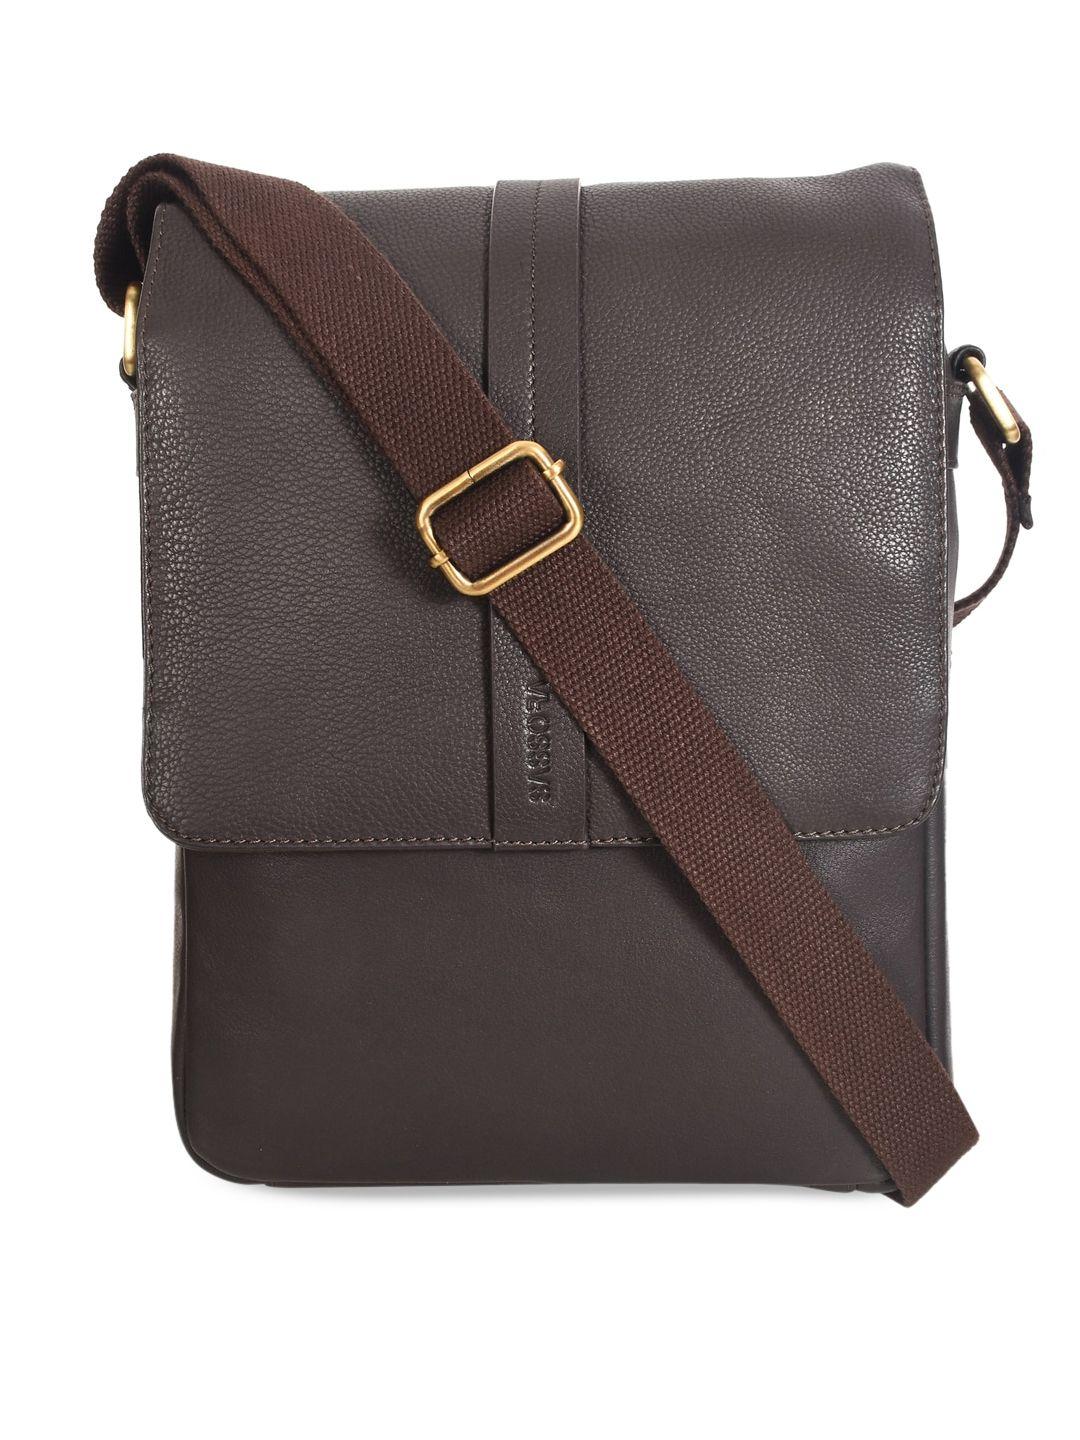 sassora men brown leather structured sling bag